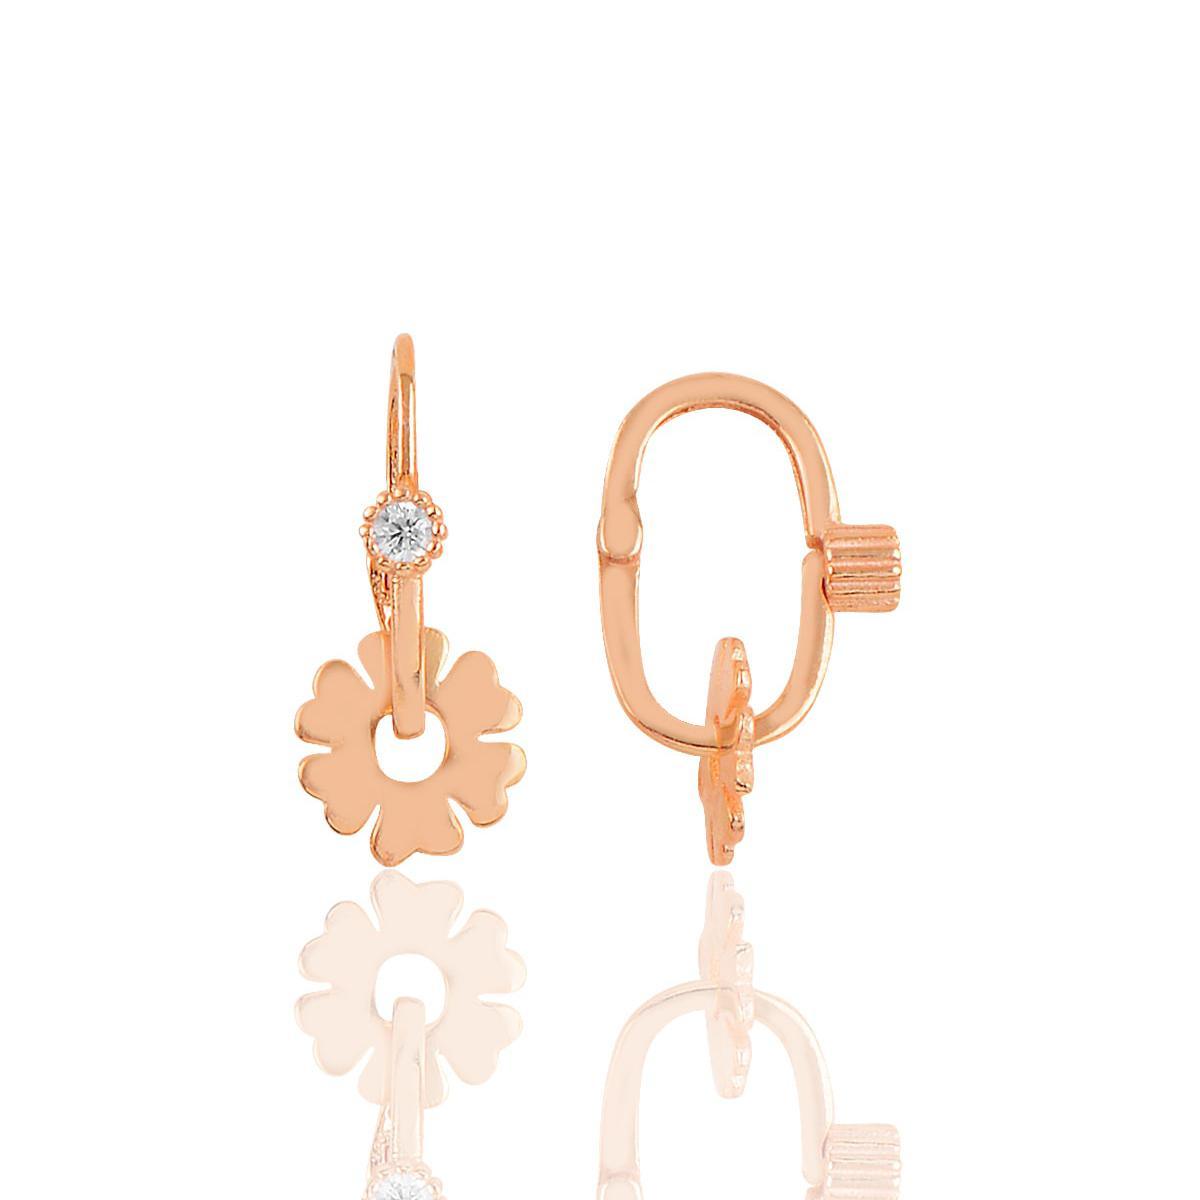 14K Gold Hoop Earrings • Four Leaf Clover Earrings Gold • Gift For Her - Trending Silver Gifts